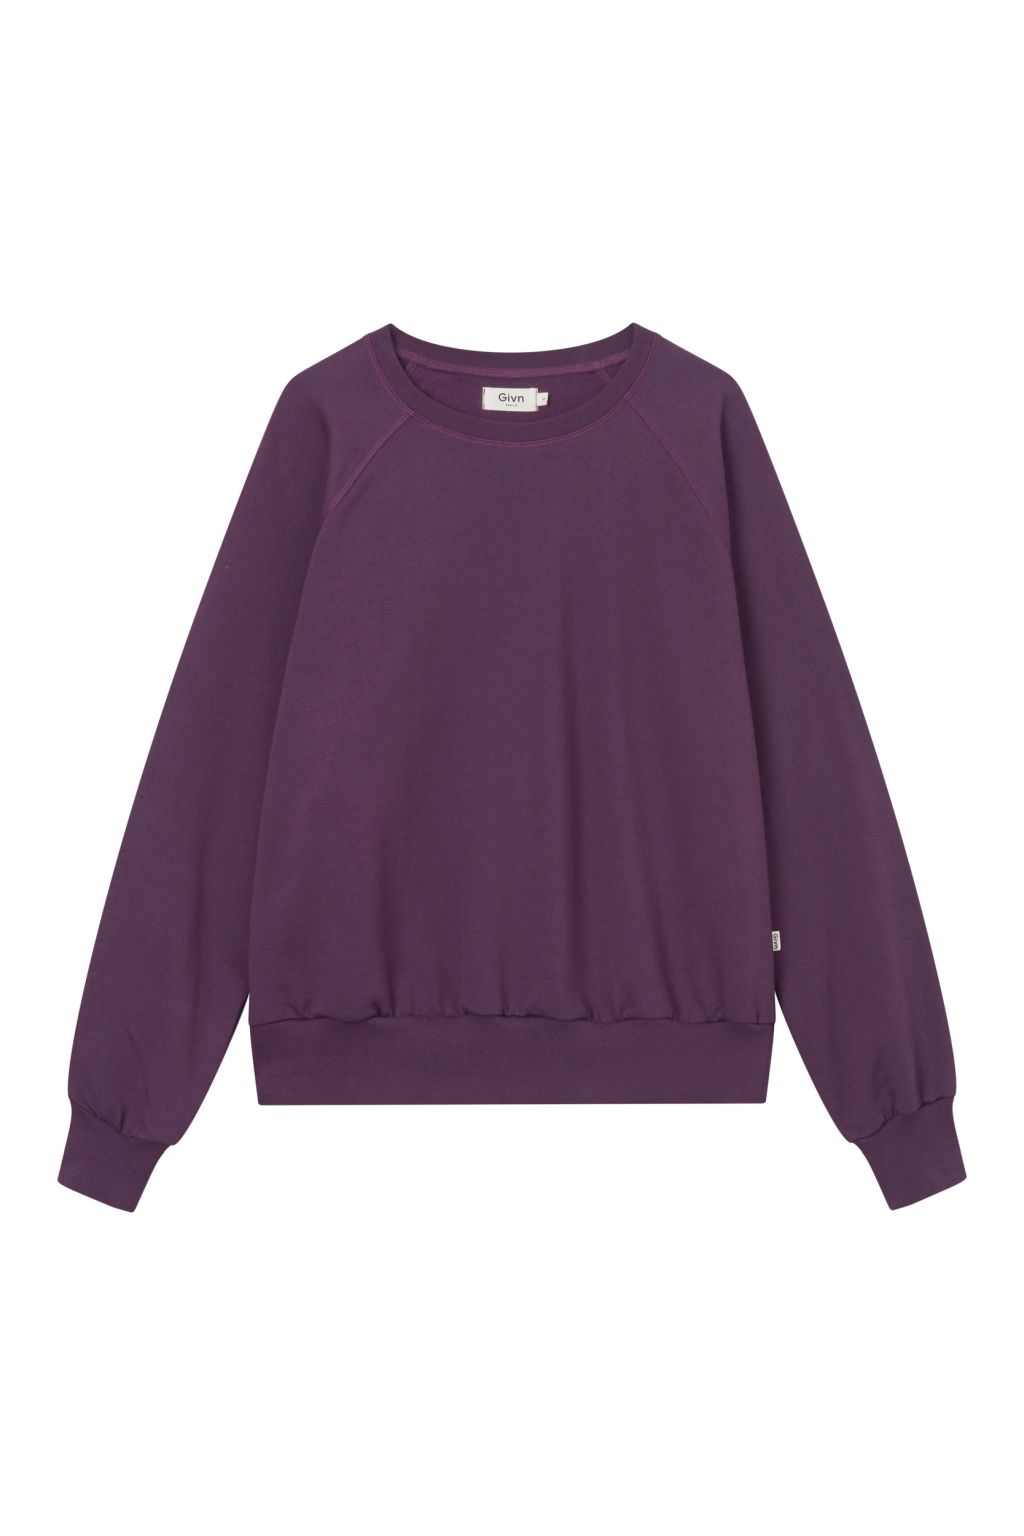 Dede - Sweater - Bio-Baumwolle Dark Purple S